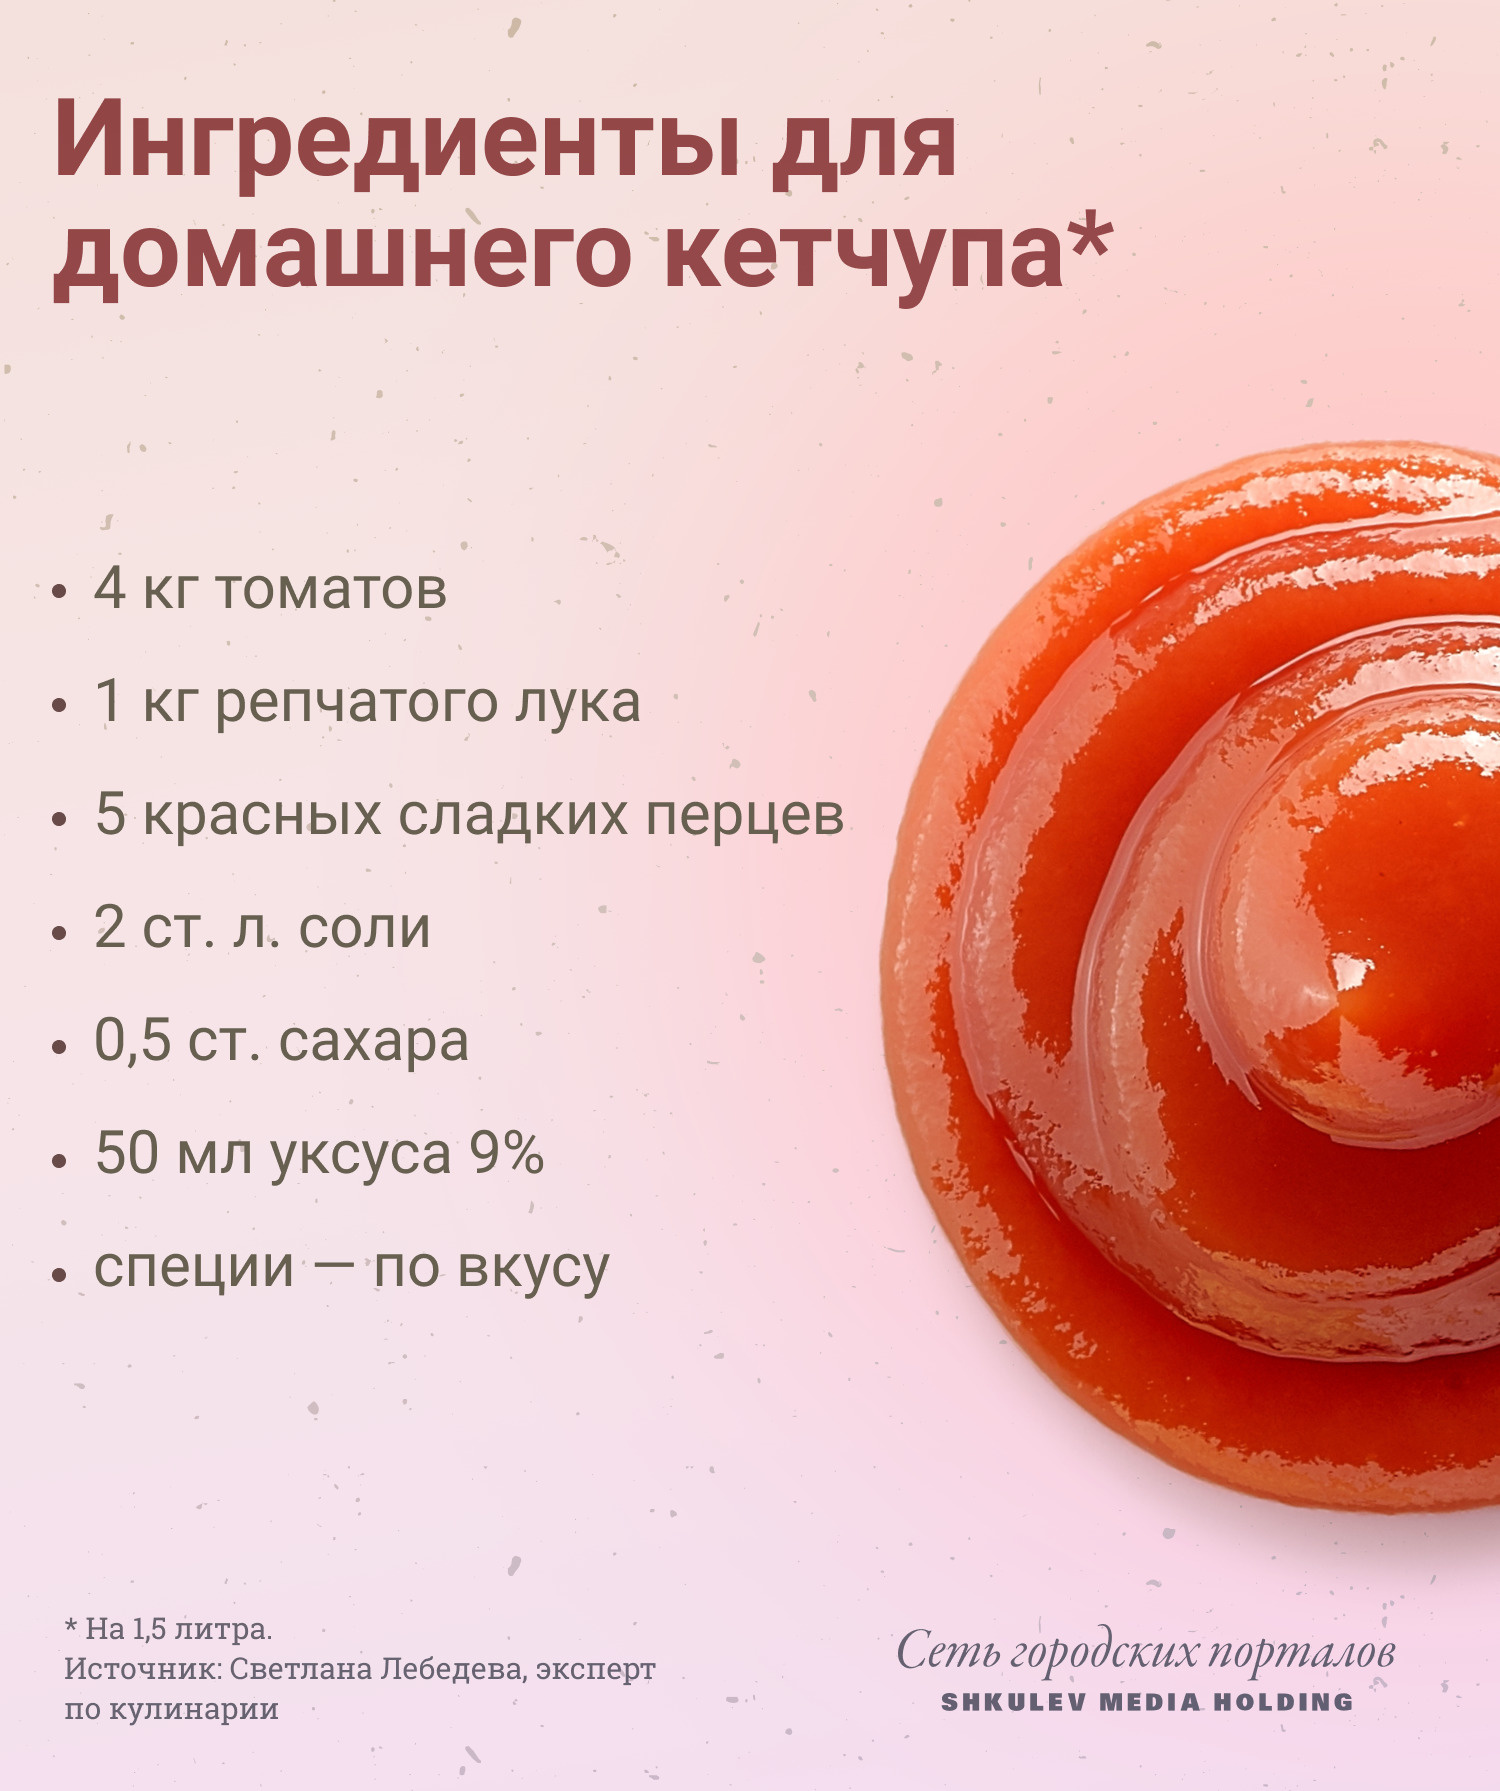 Из четырех кило томатов у вас получится полтора килограмма кетчупа